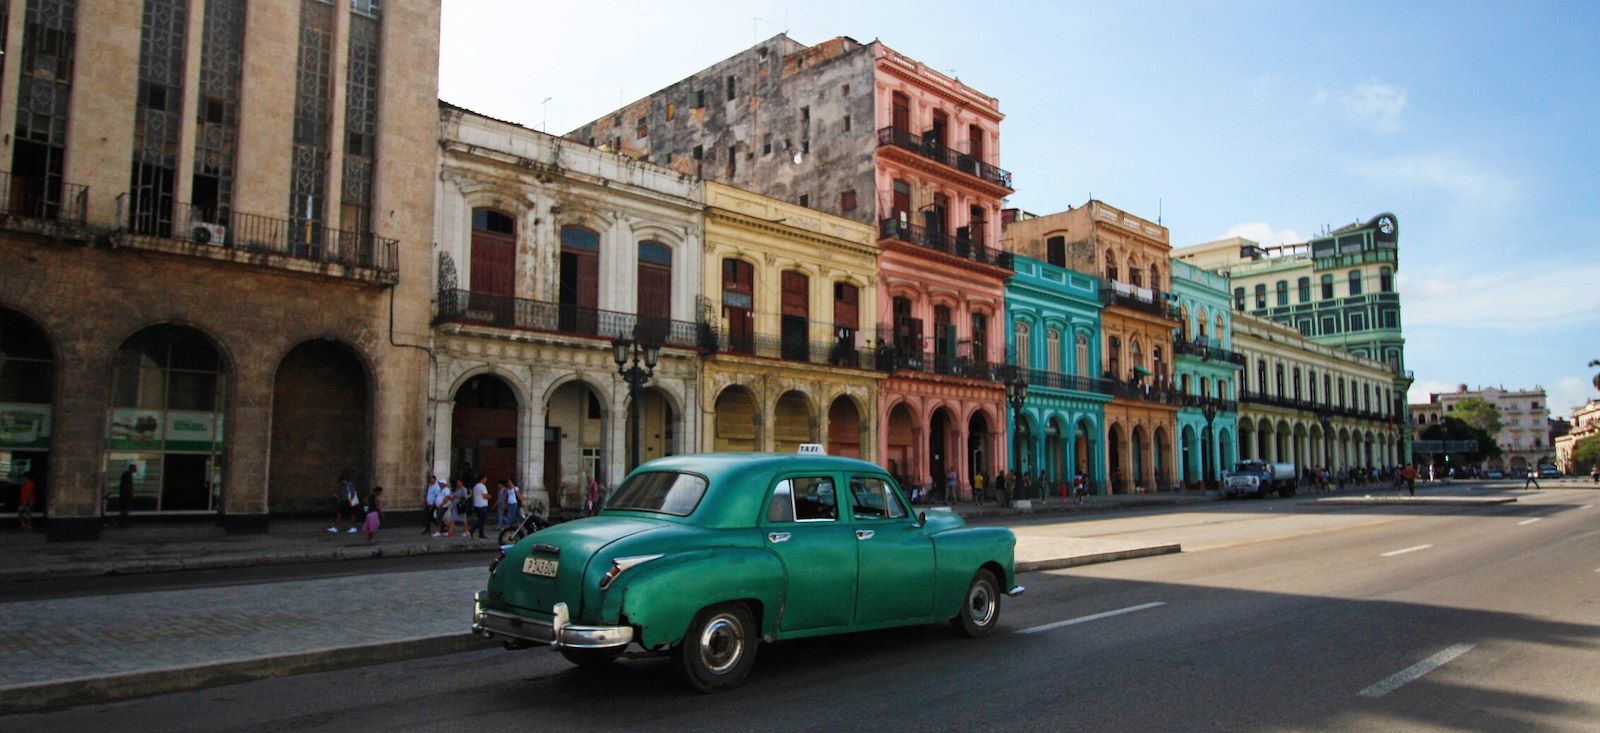 Voyage roadtrip - Fidel à Cuba